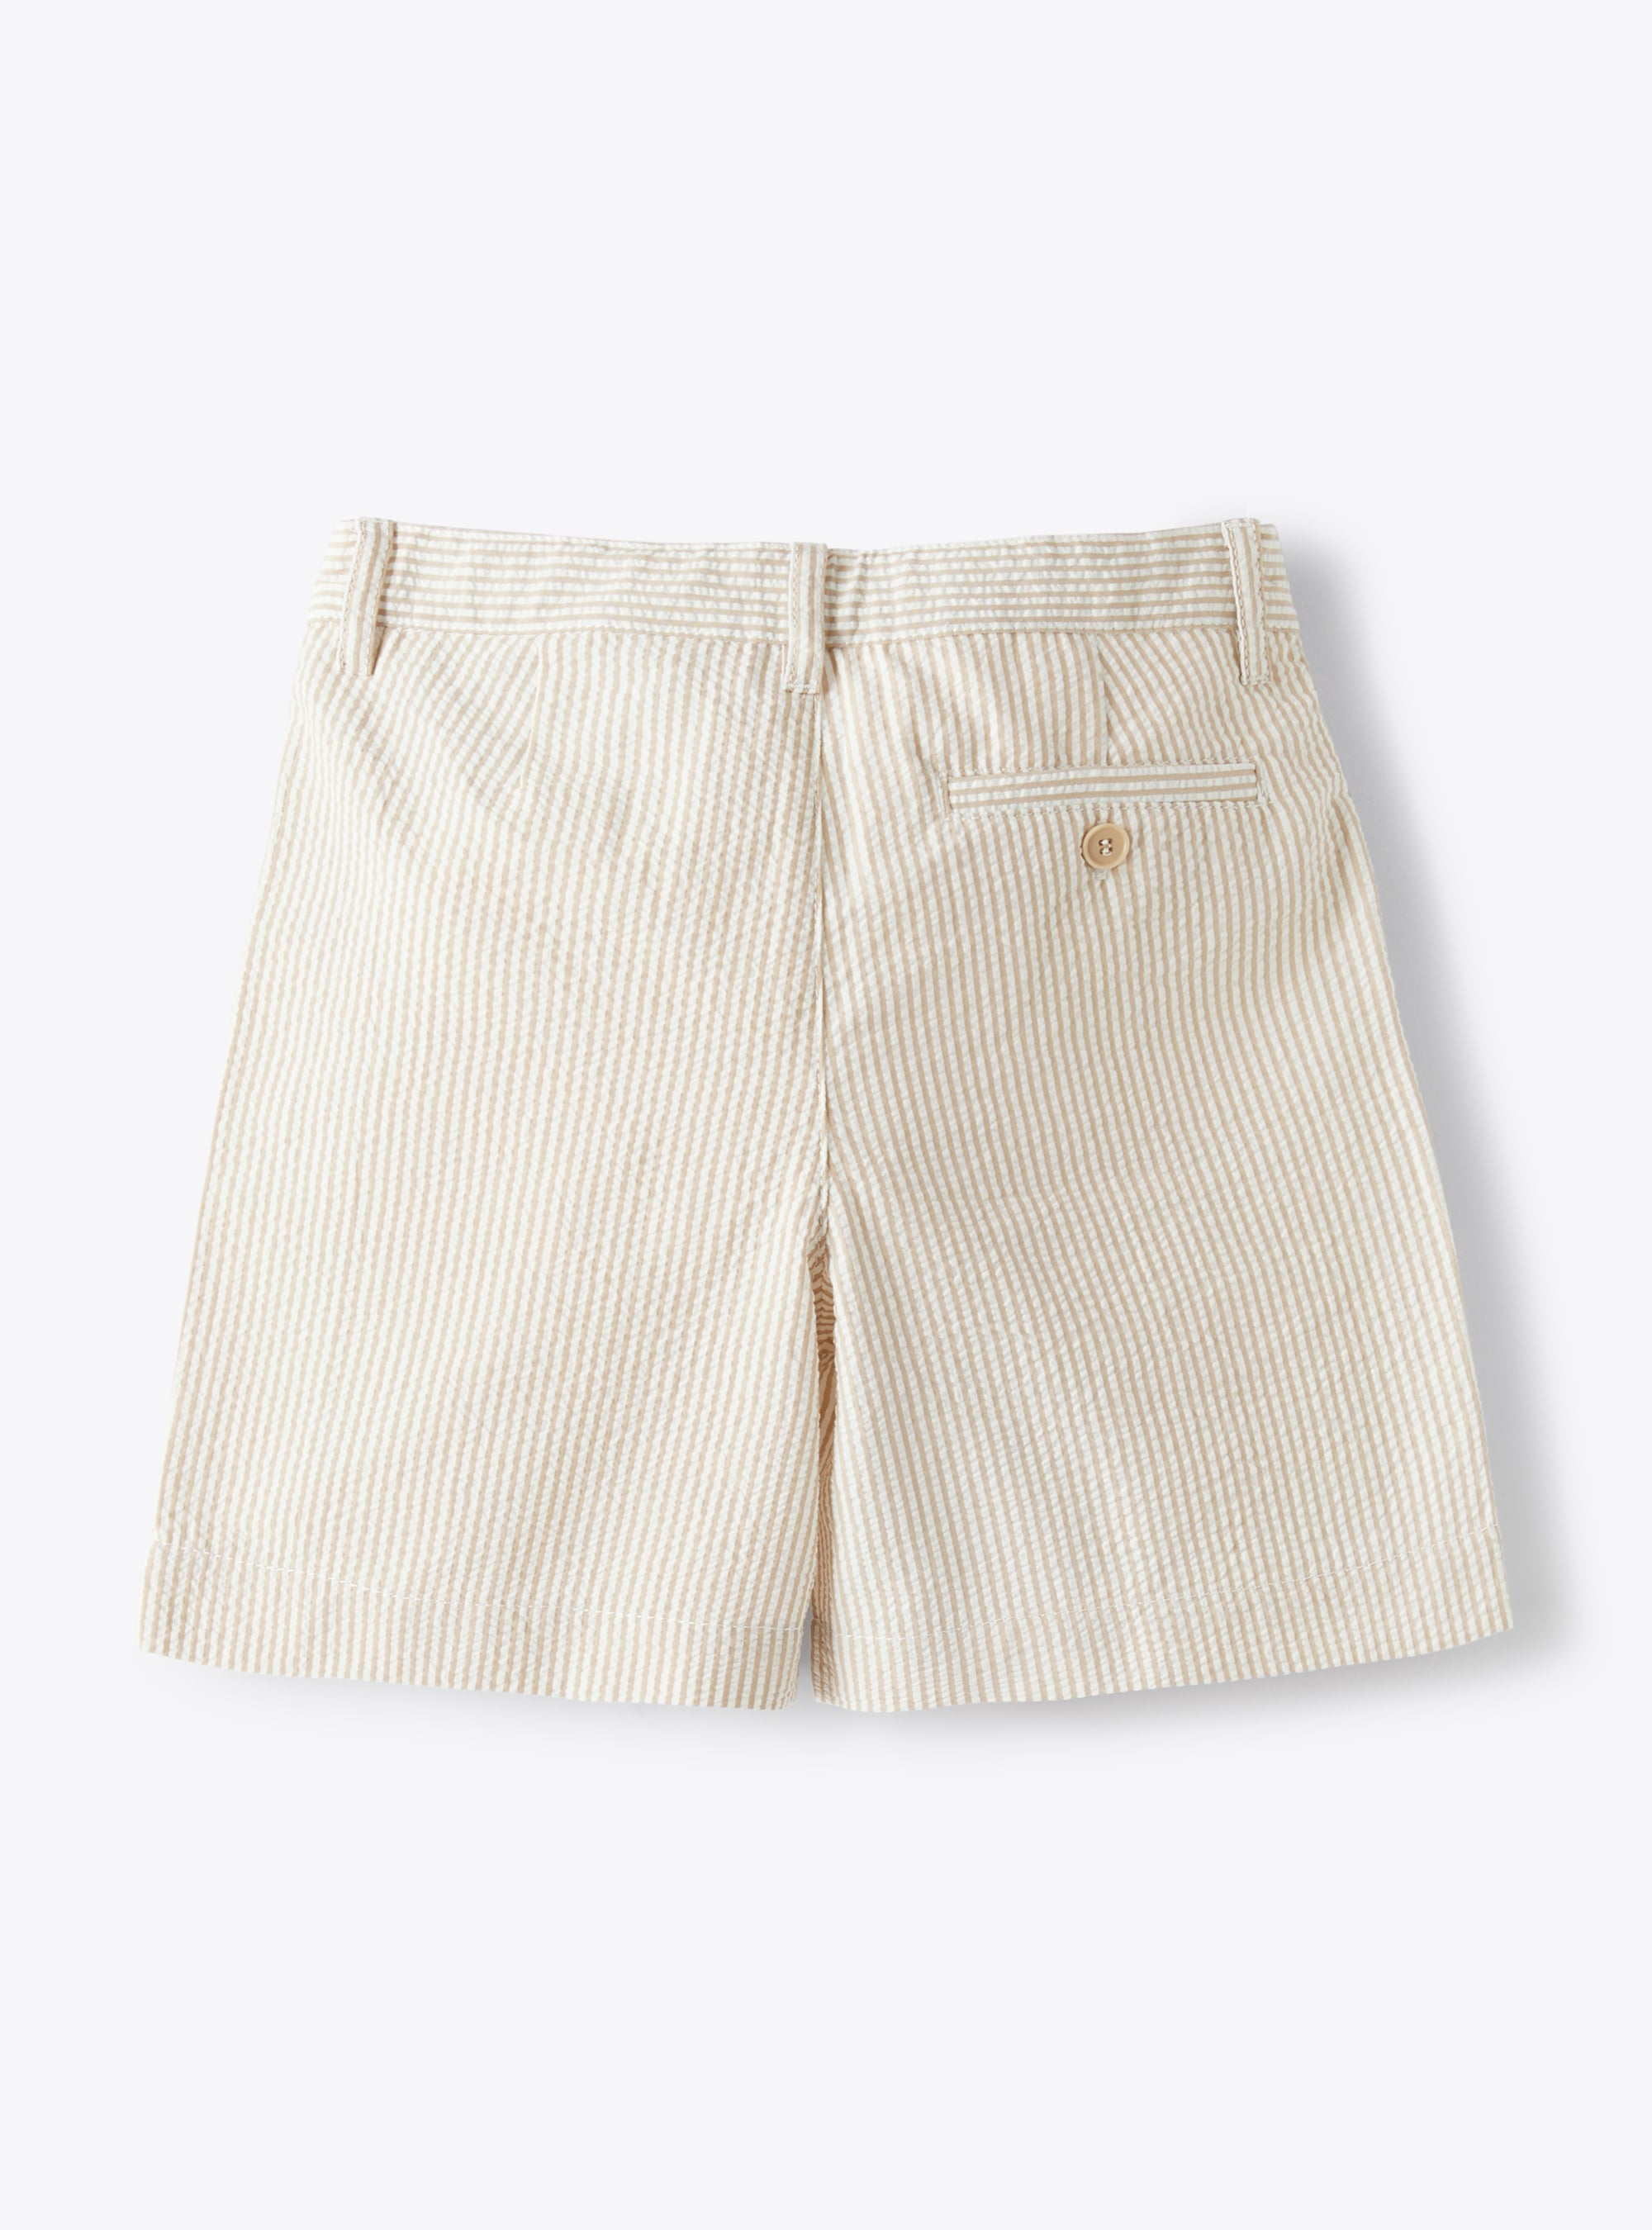 Bermuda shorts in beige-&-white striped seersucker - Beige | Il Gufo